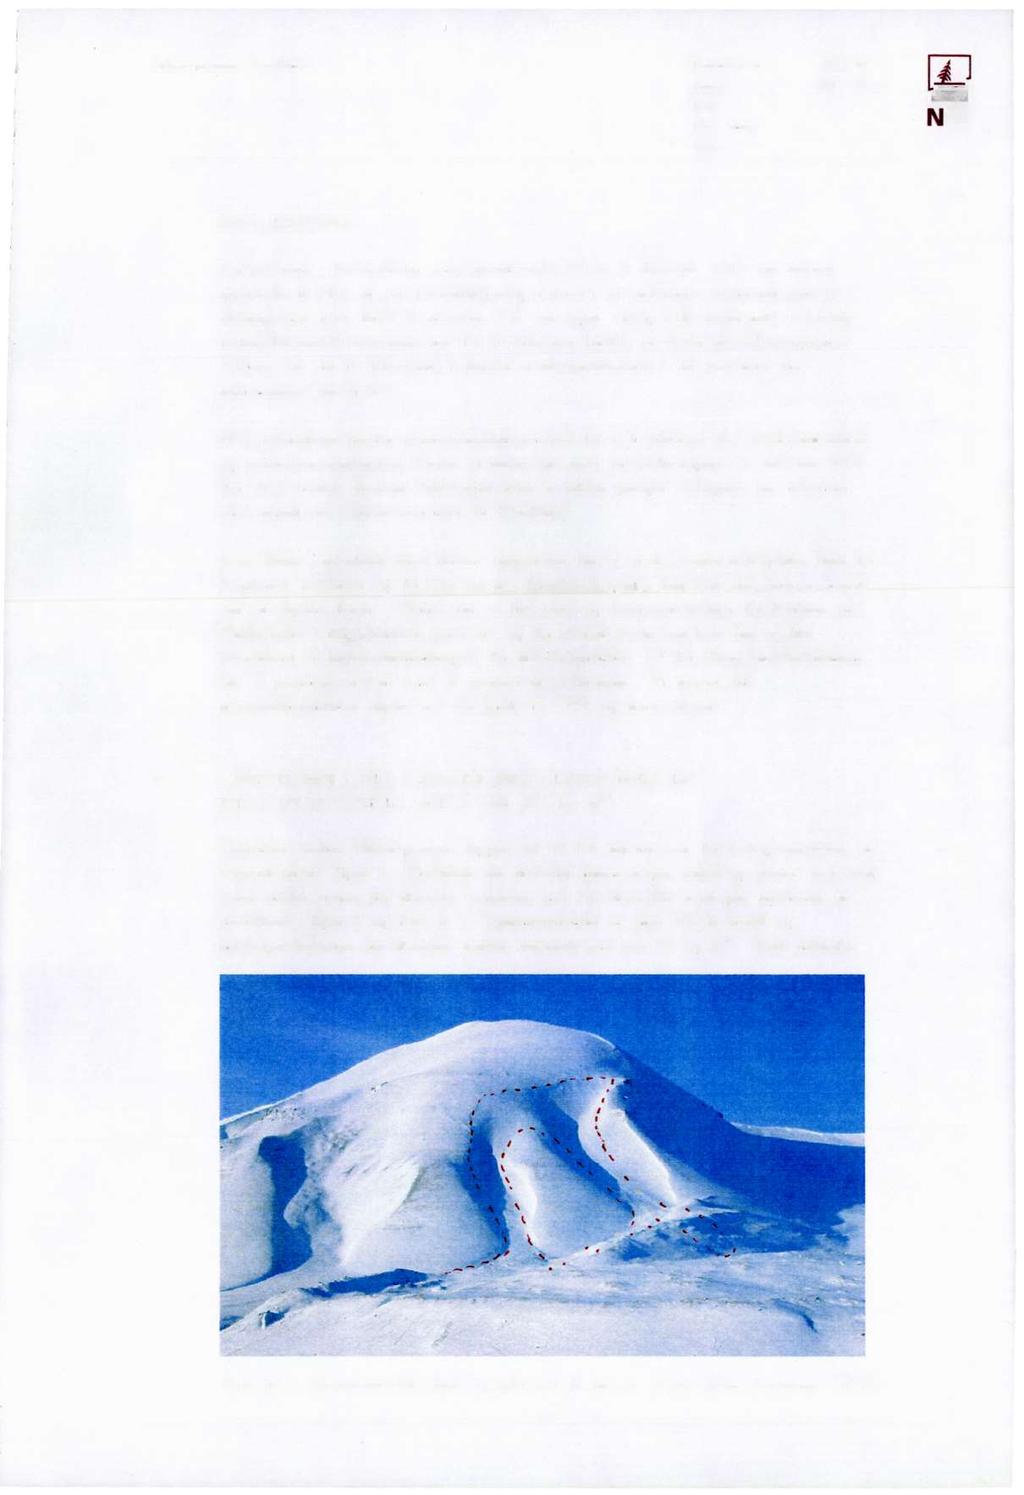 Håbergnuten, Svalbard Rapport nr: 588100-21 E Dato: 2001-08-31 t' Rev: Rev. dato: NGI Side: 4 1 INNLEDNING Forholdene i forbindelse med snøskredulykken 4.